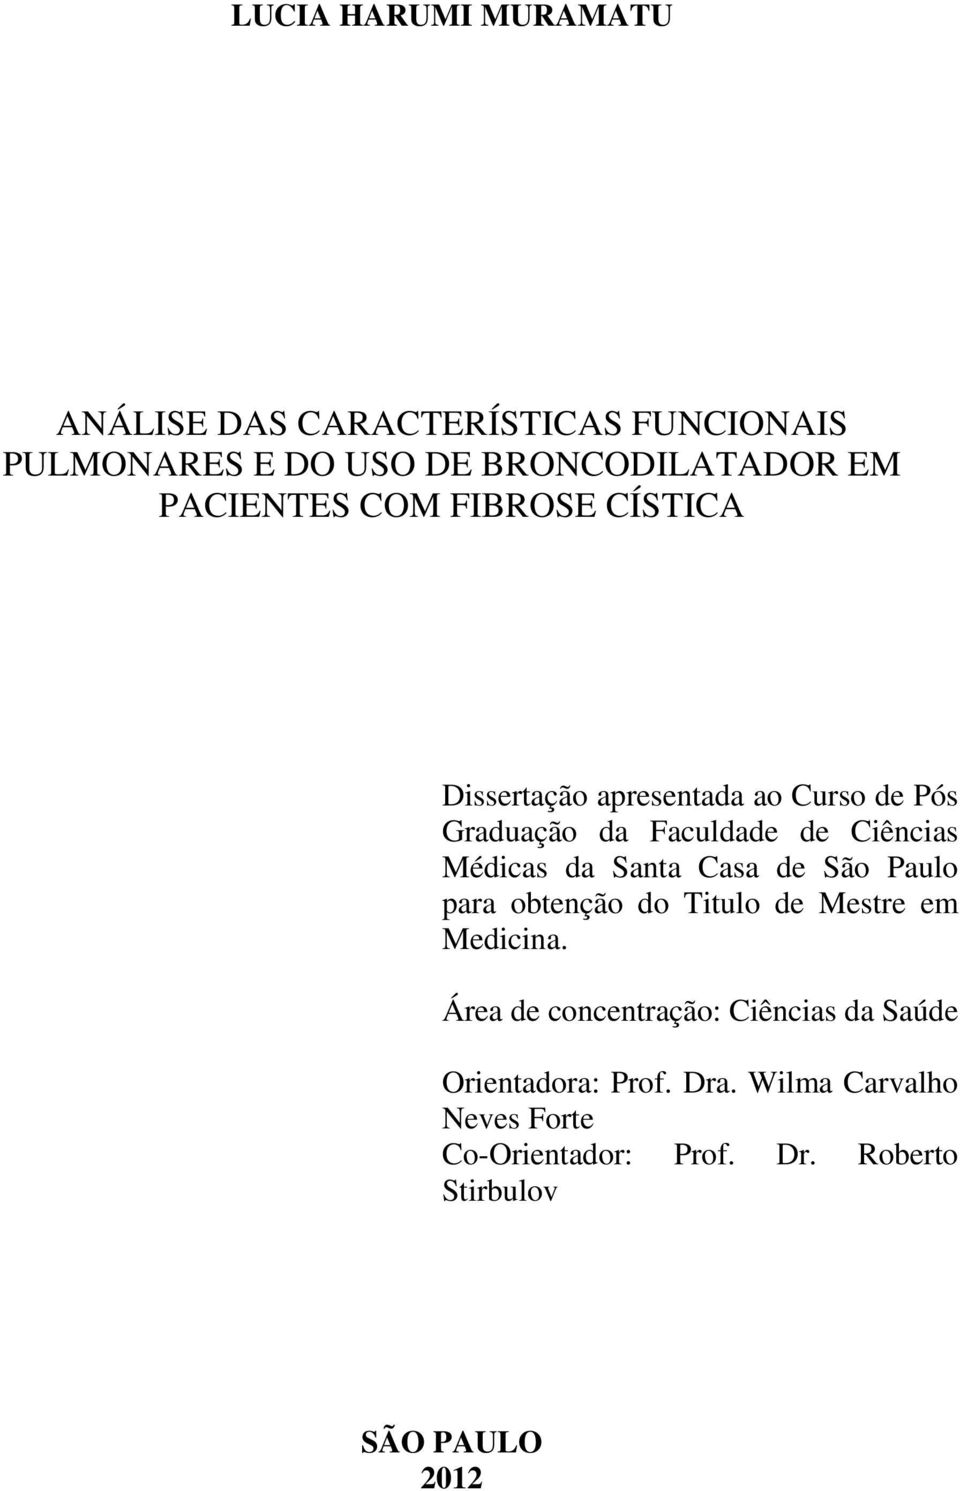 Médicas da Santa Casa de São Paulo para obtenção do Titulo de Mestre em Medicina.